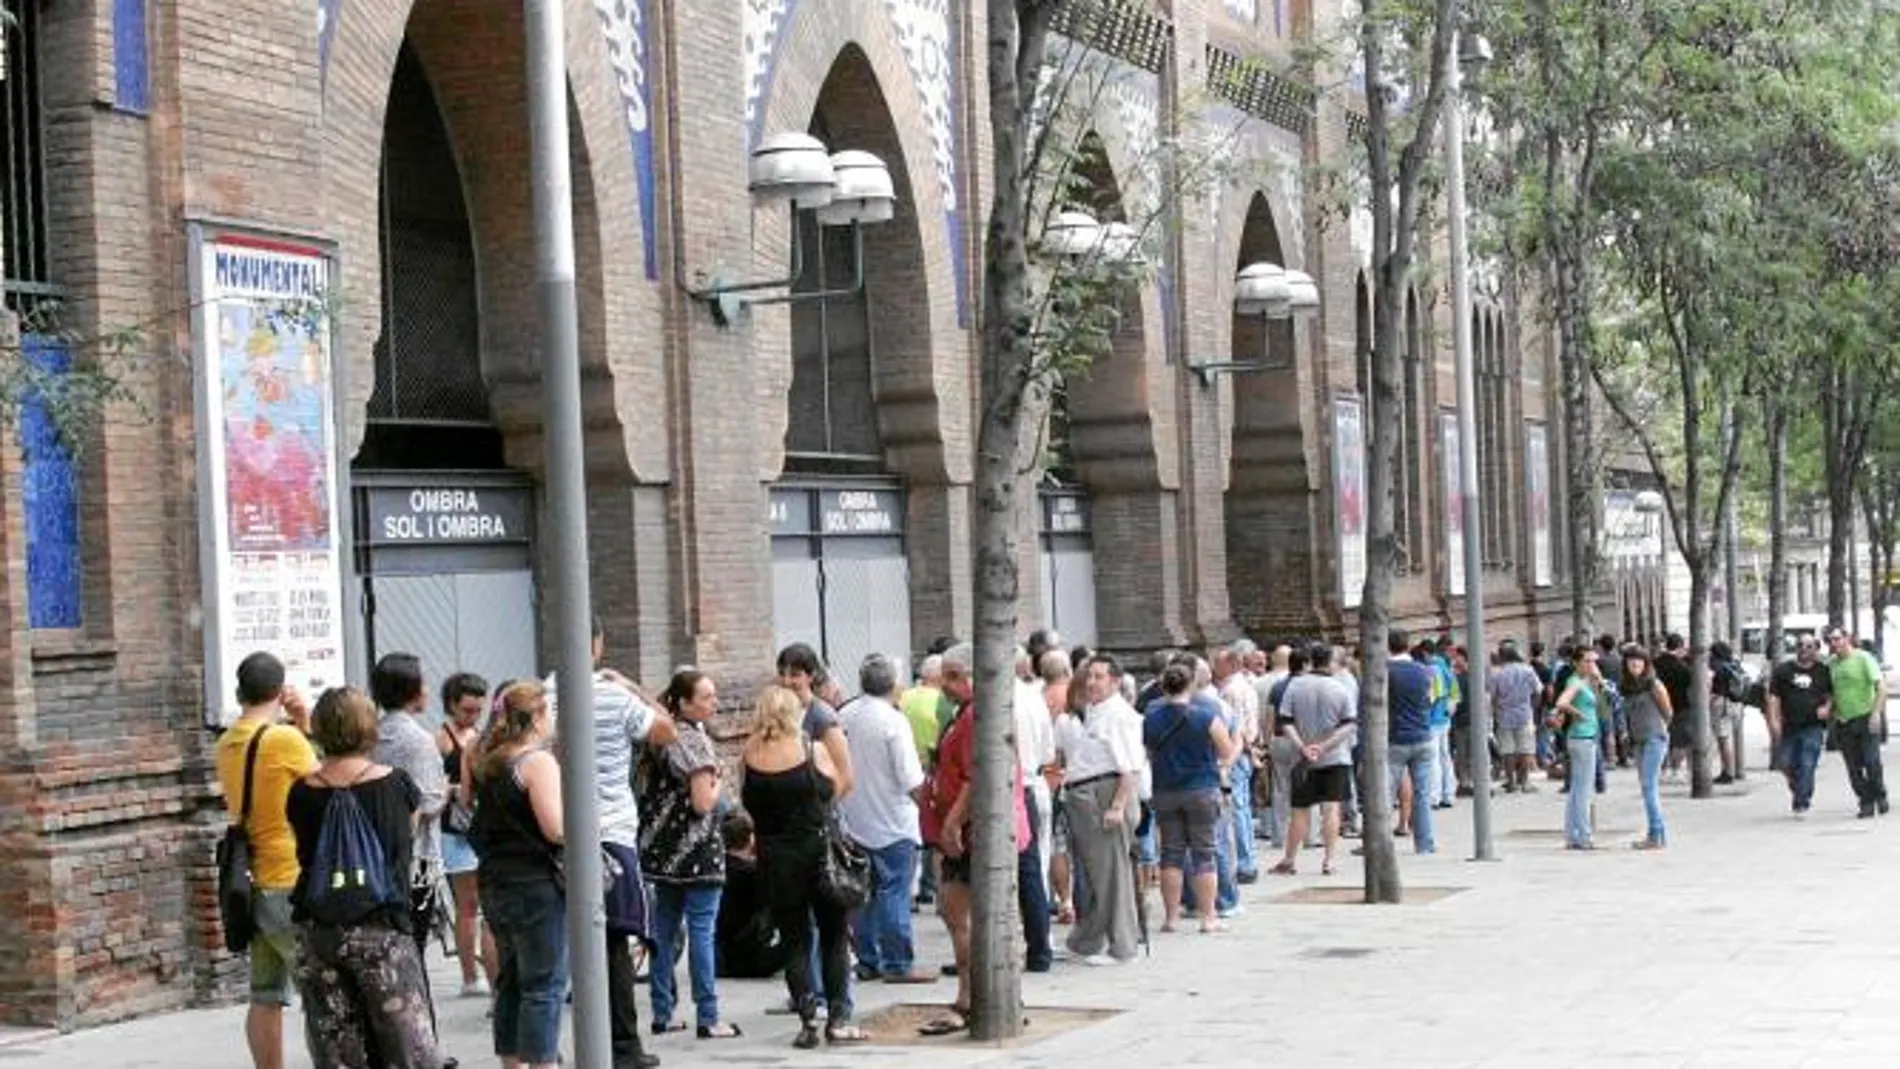 Largas colas en Barcelona para comprar entradas para la Monumental